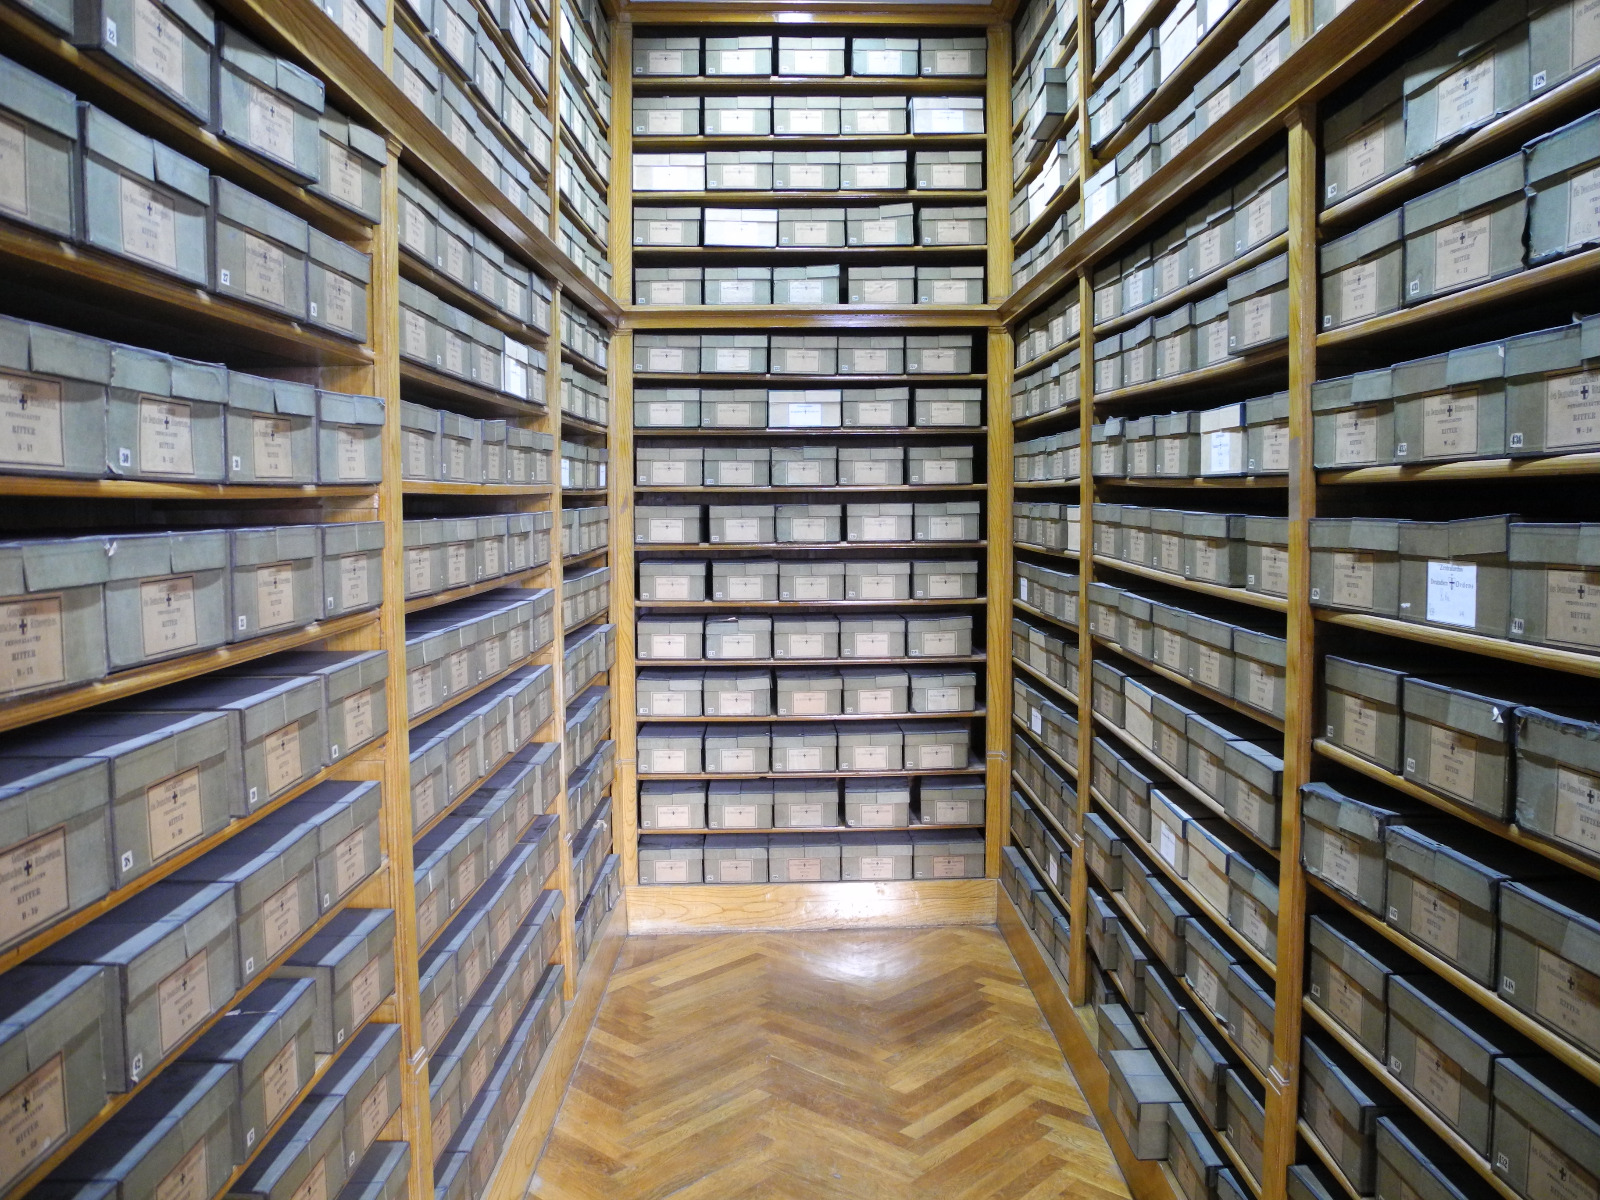 Das Bild zeigt einen Archivalienraum im Deutschordenshaus in Wien, in dem hohe Regale gefüllt mit beschrifteten Kästen zu sehen sind.